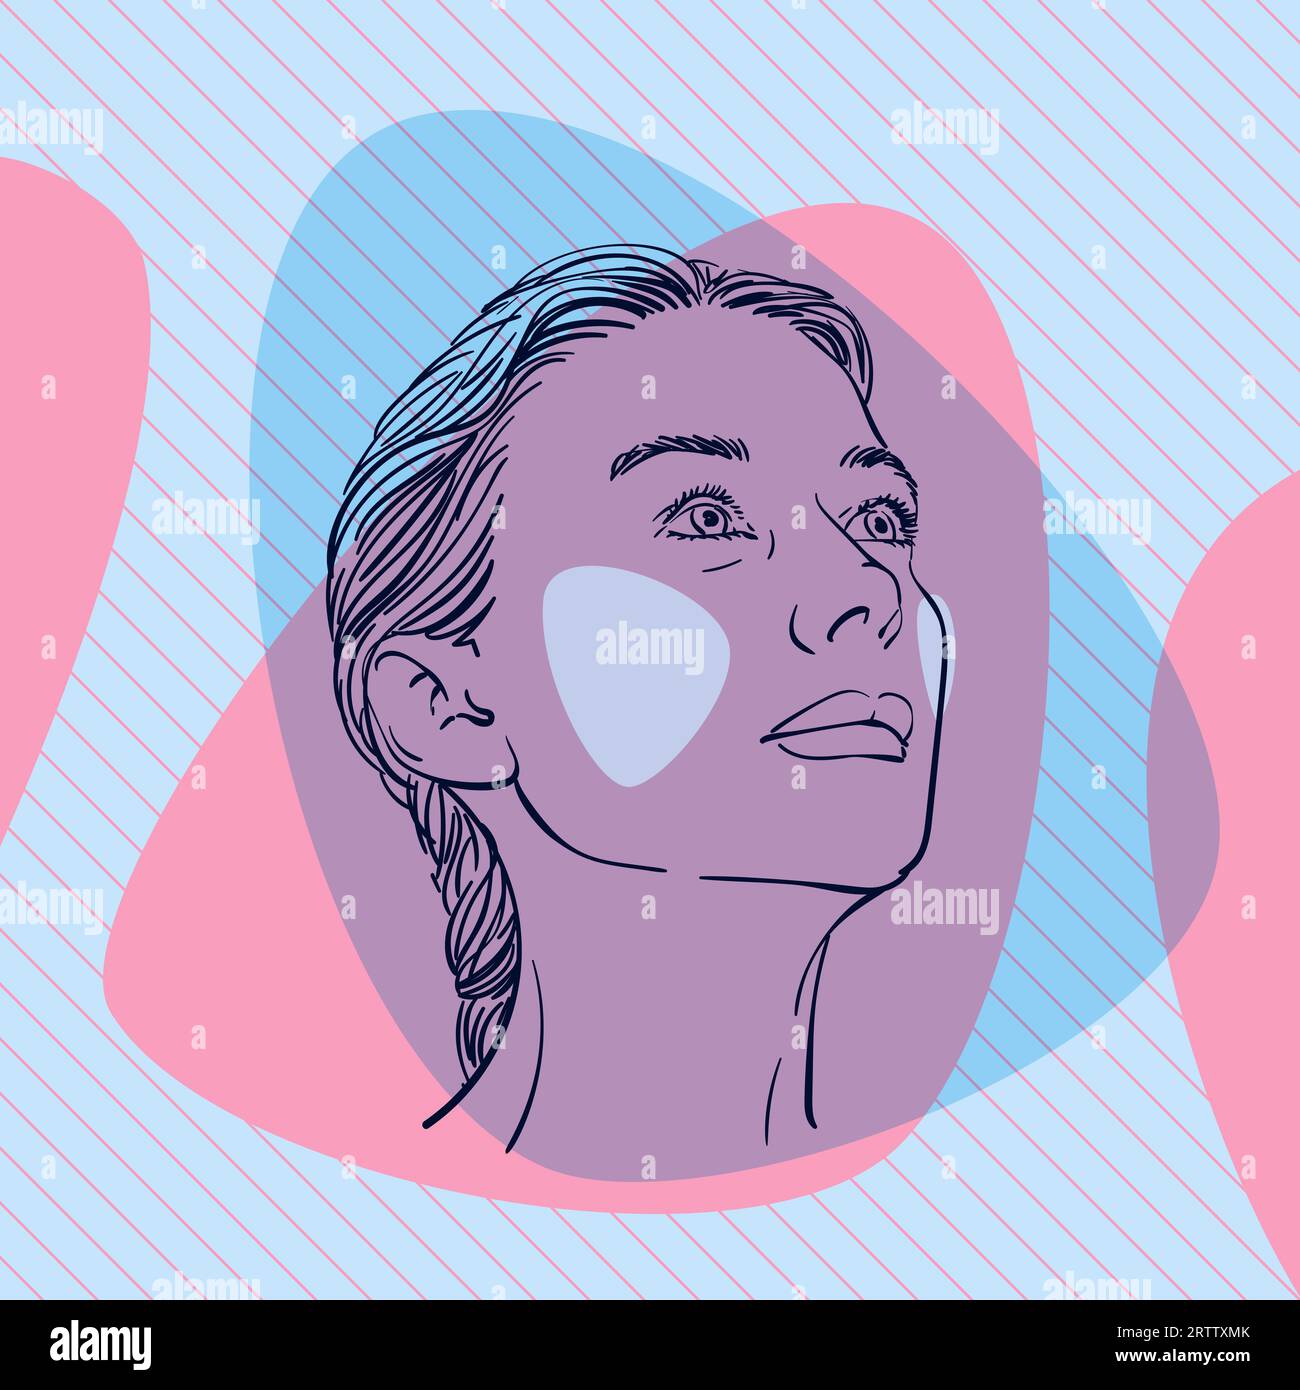 Croquis de la tête de la femme regardant vers le haut sur le côté avec des joues colorées sur des formes profilées abstraites de couleur bleue et rose sur fond carré rayé diagonal Illustration de Vecteur